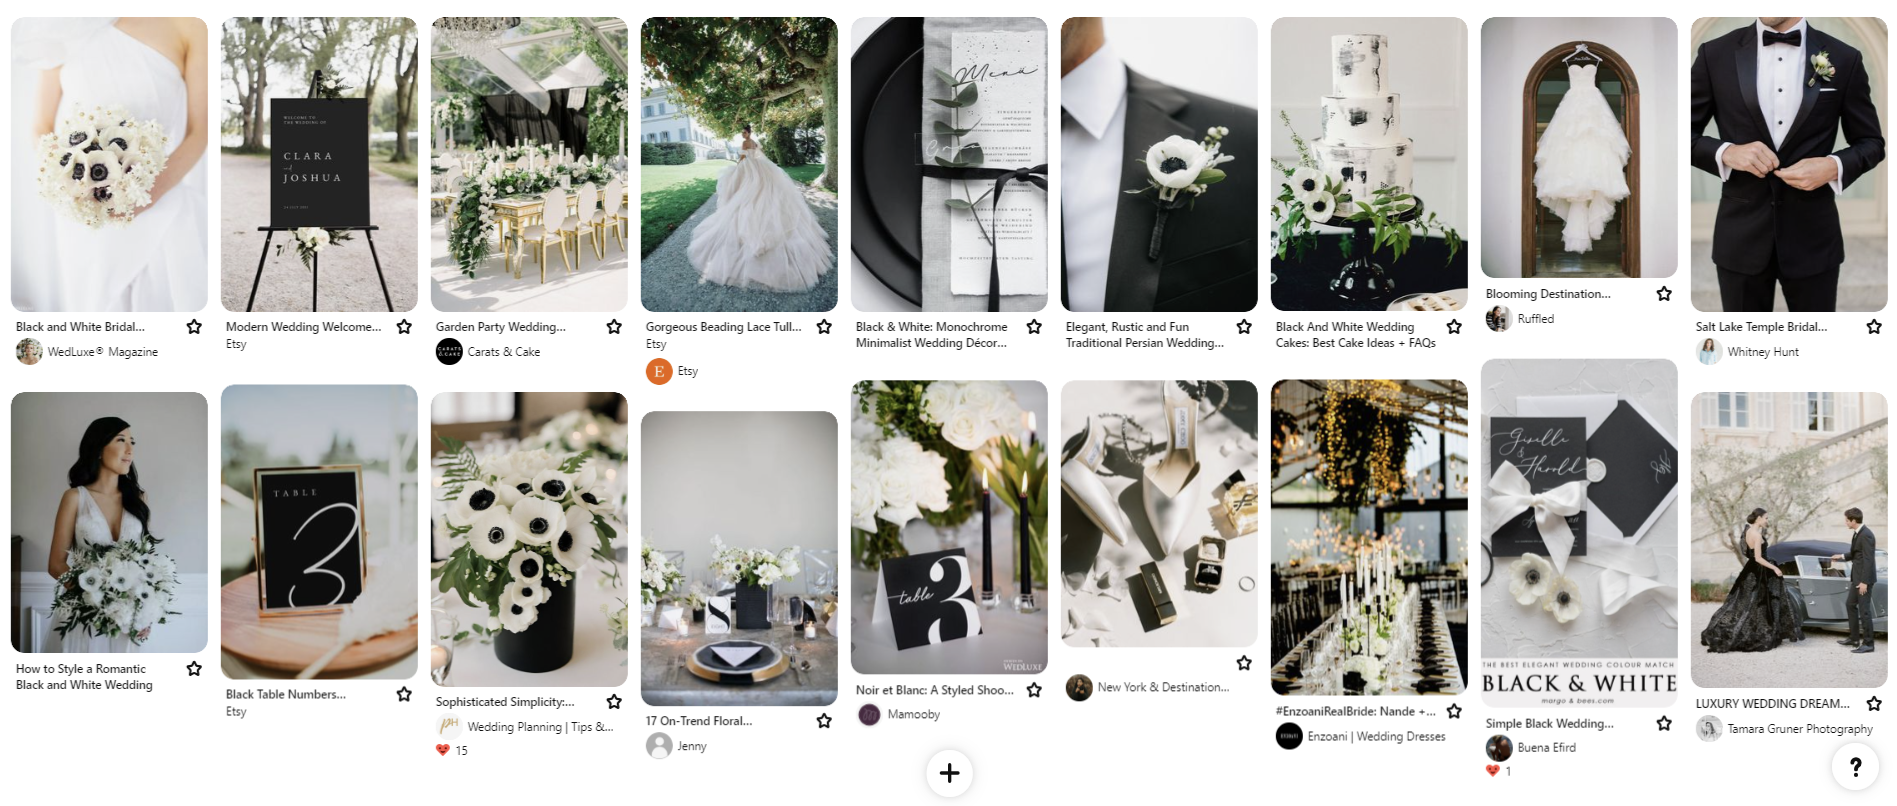 Skapa ett moodboard på Pinterest! till ert bröllop! Här har Fotograf Tove Lundquists pinnat bilder till ett elegant bröllop som går i svart och vitt. 